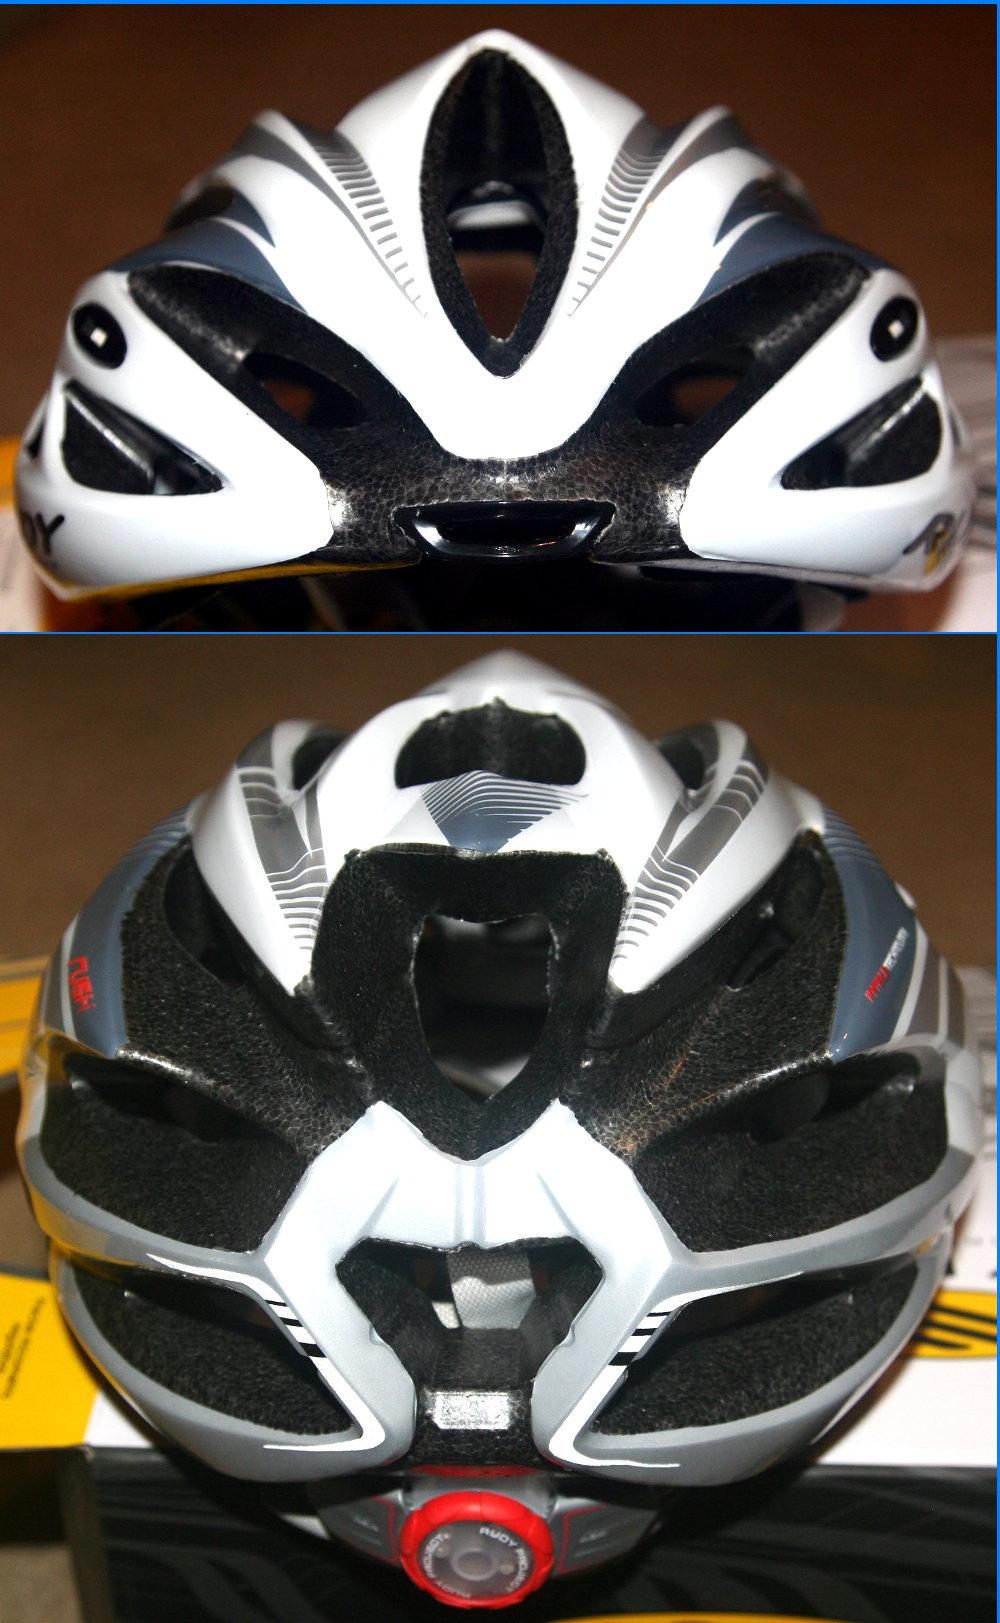 zebra eenvoudig strategie Rudy Project RUSH Helmet Reviewed - One of the Best!